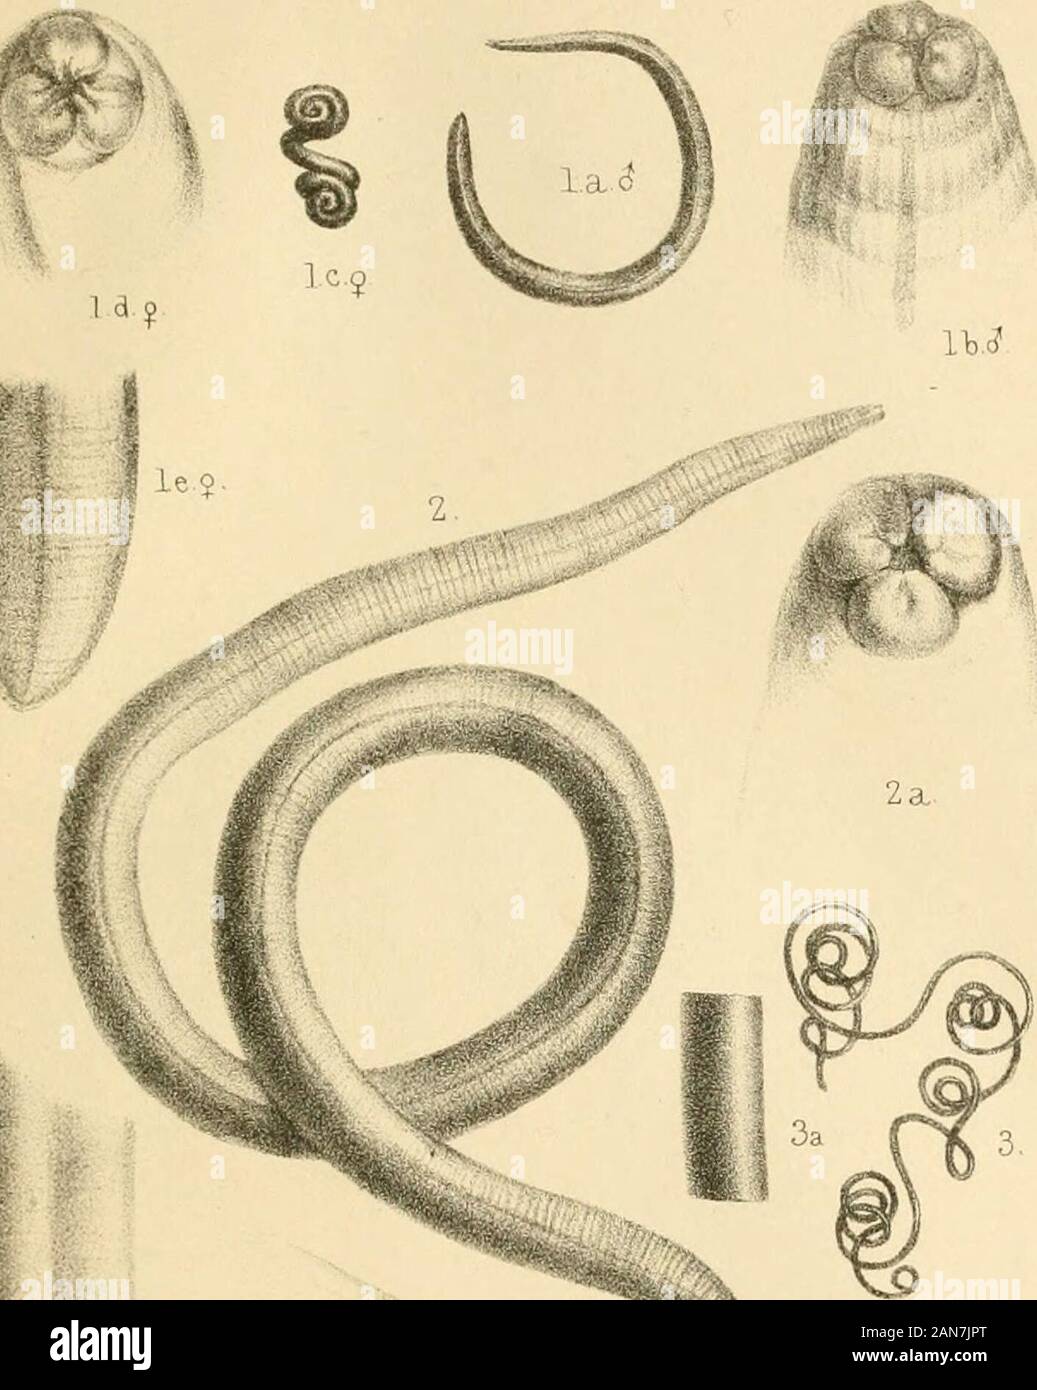 Catalogo delle specie di Entozoa, o vermi intestinali, contenute nella collezione del British Museum [da William Baird] . , Di Berlino. Questo catalogo è stato preparato e la nuova Speciies de-, incisa dal dottor Baird. JOHN EDWARD grigio. British Museum,Maggio l&th, 1853, KXPLANATIOiN di ll,ATKS. Scheda. I., f. 1. Gli Ascaris similis, S e ^. 1 a. Maschio, nat. dimensioni; 1 h. testa di fare. ingrandito; 1 c. femmina. nat. dimensioni; 1 d. testa di fare. ingrandito; 1 e. coda di fare. fare". f. 2. Gli Ascaris bifaria, nat. dimensioni; 2 a. testa di fare." ingrandita f. 3. Mermis spiralis, SVS. dimensioni; 3 a. j^ortion del corpo. ingrandita." f. Foto Stock